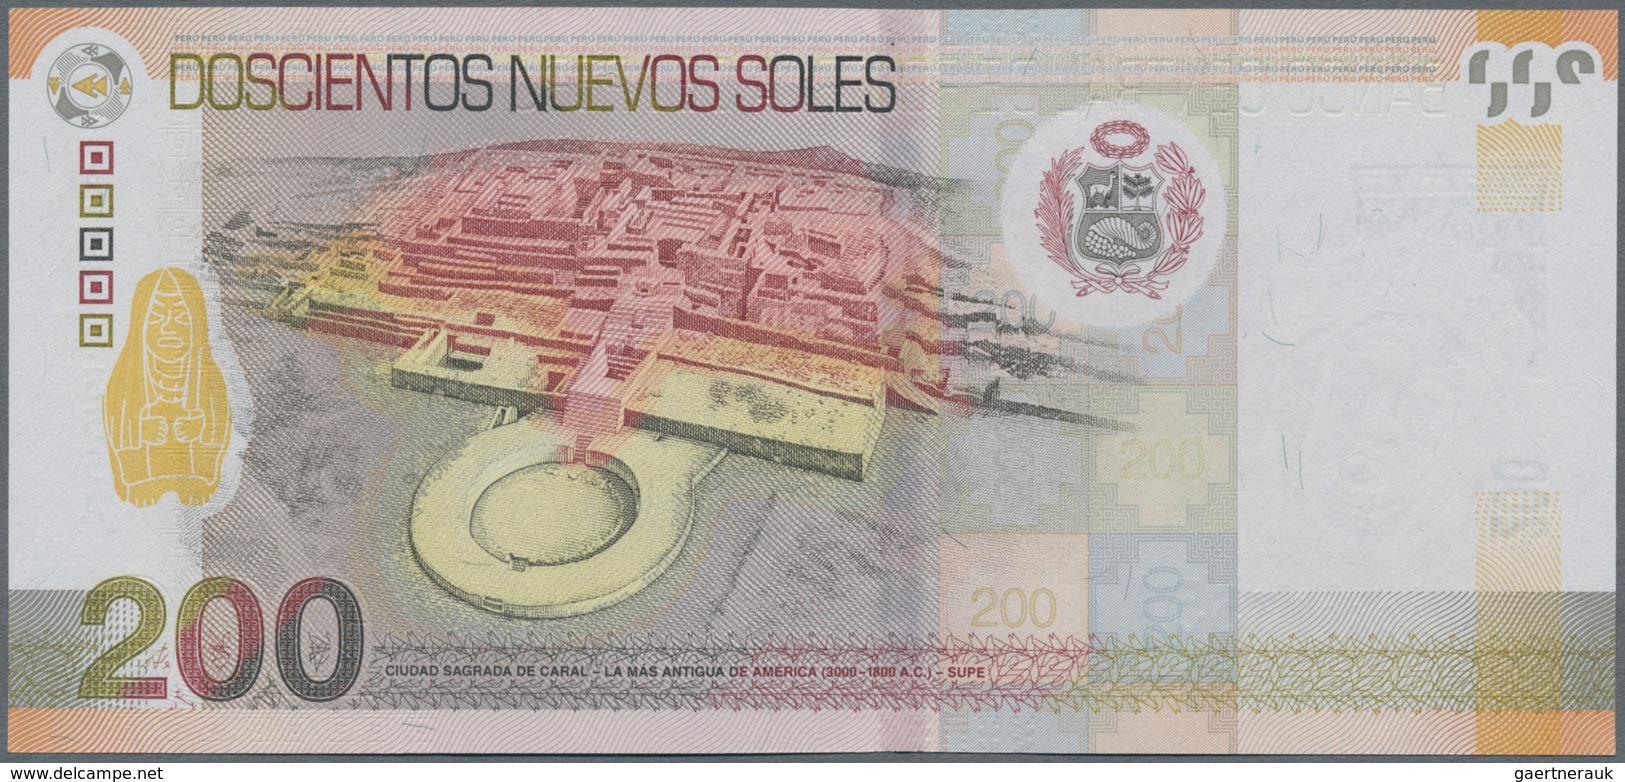 Peru: Banco Central De Reserva Del Perú 200 Nuevos Soles 2009, P.186 In Perfect UNC Condition. - Peru